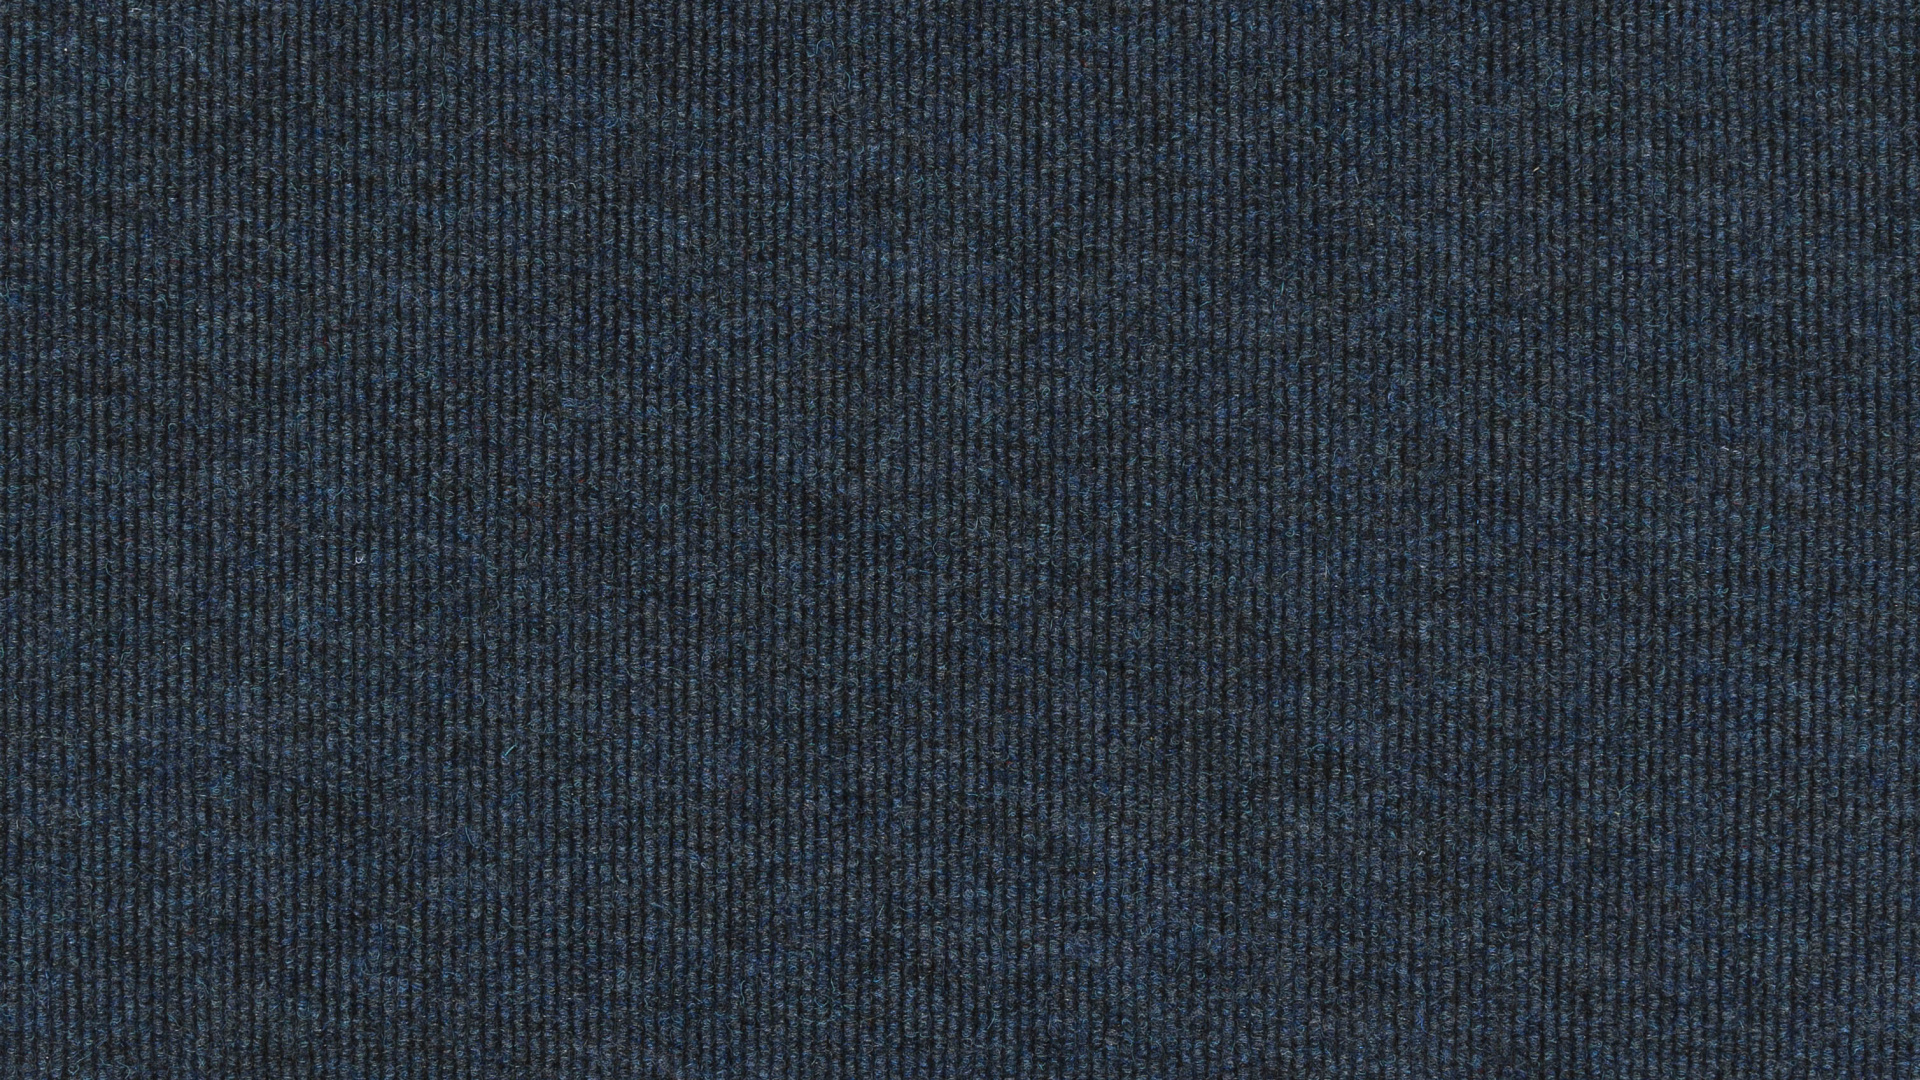 Textile Bleu Sur Fond Noir. Wallpaper in 1920x1080 Resolution